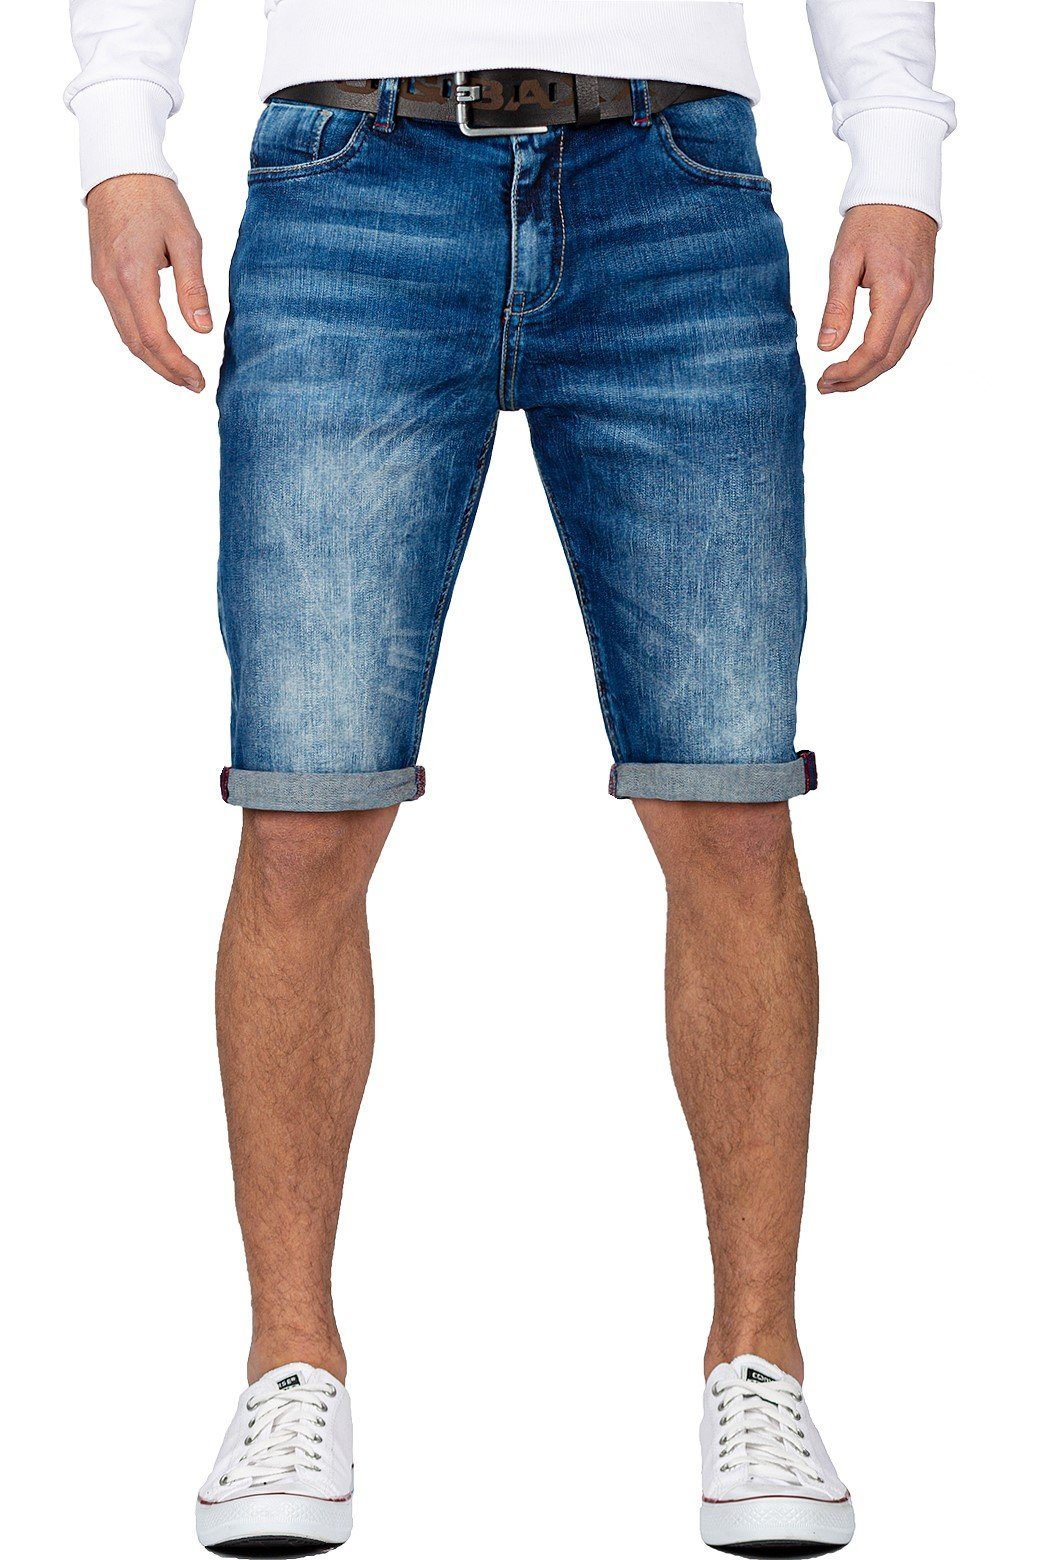 Cipo & Baxx Herren Jeans Shorts online kaufen | OTTO